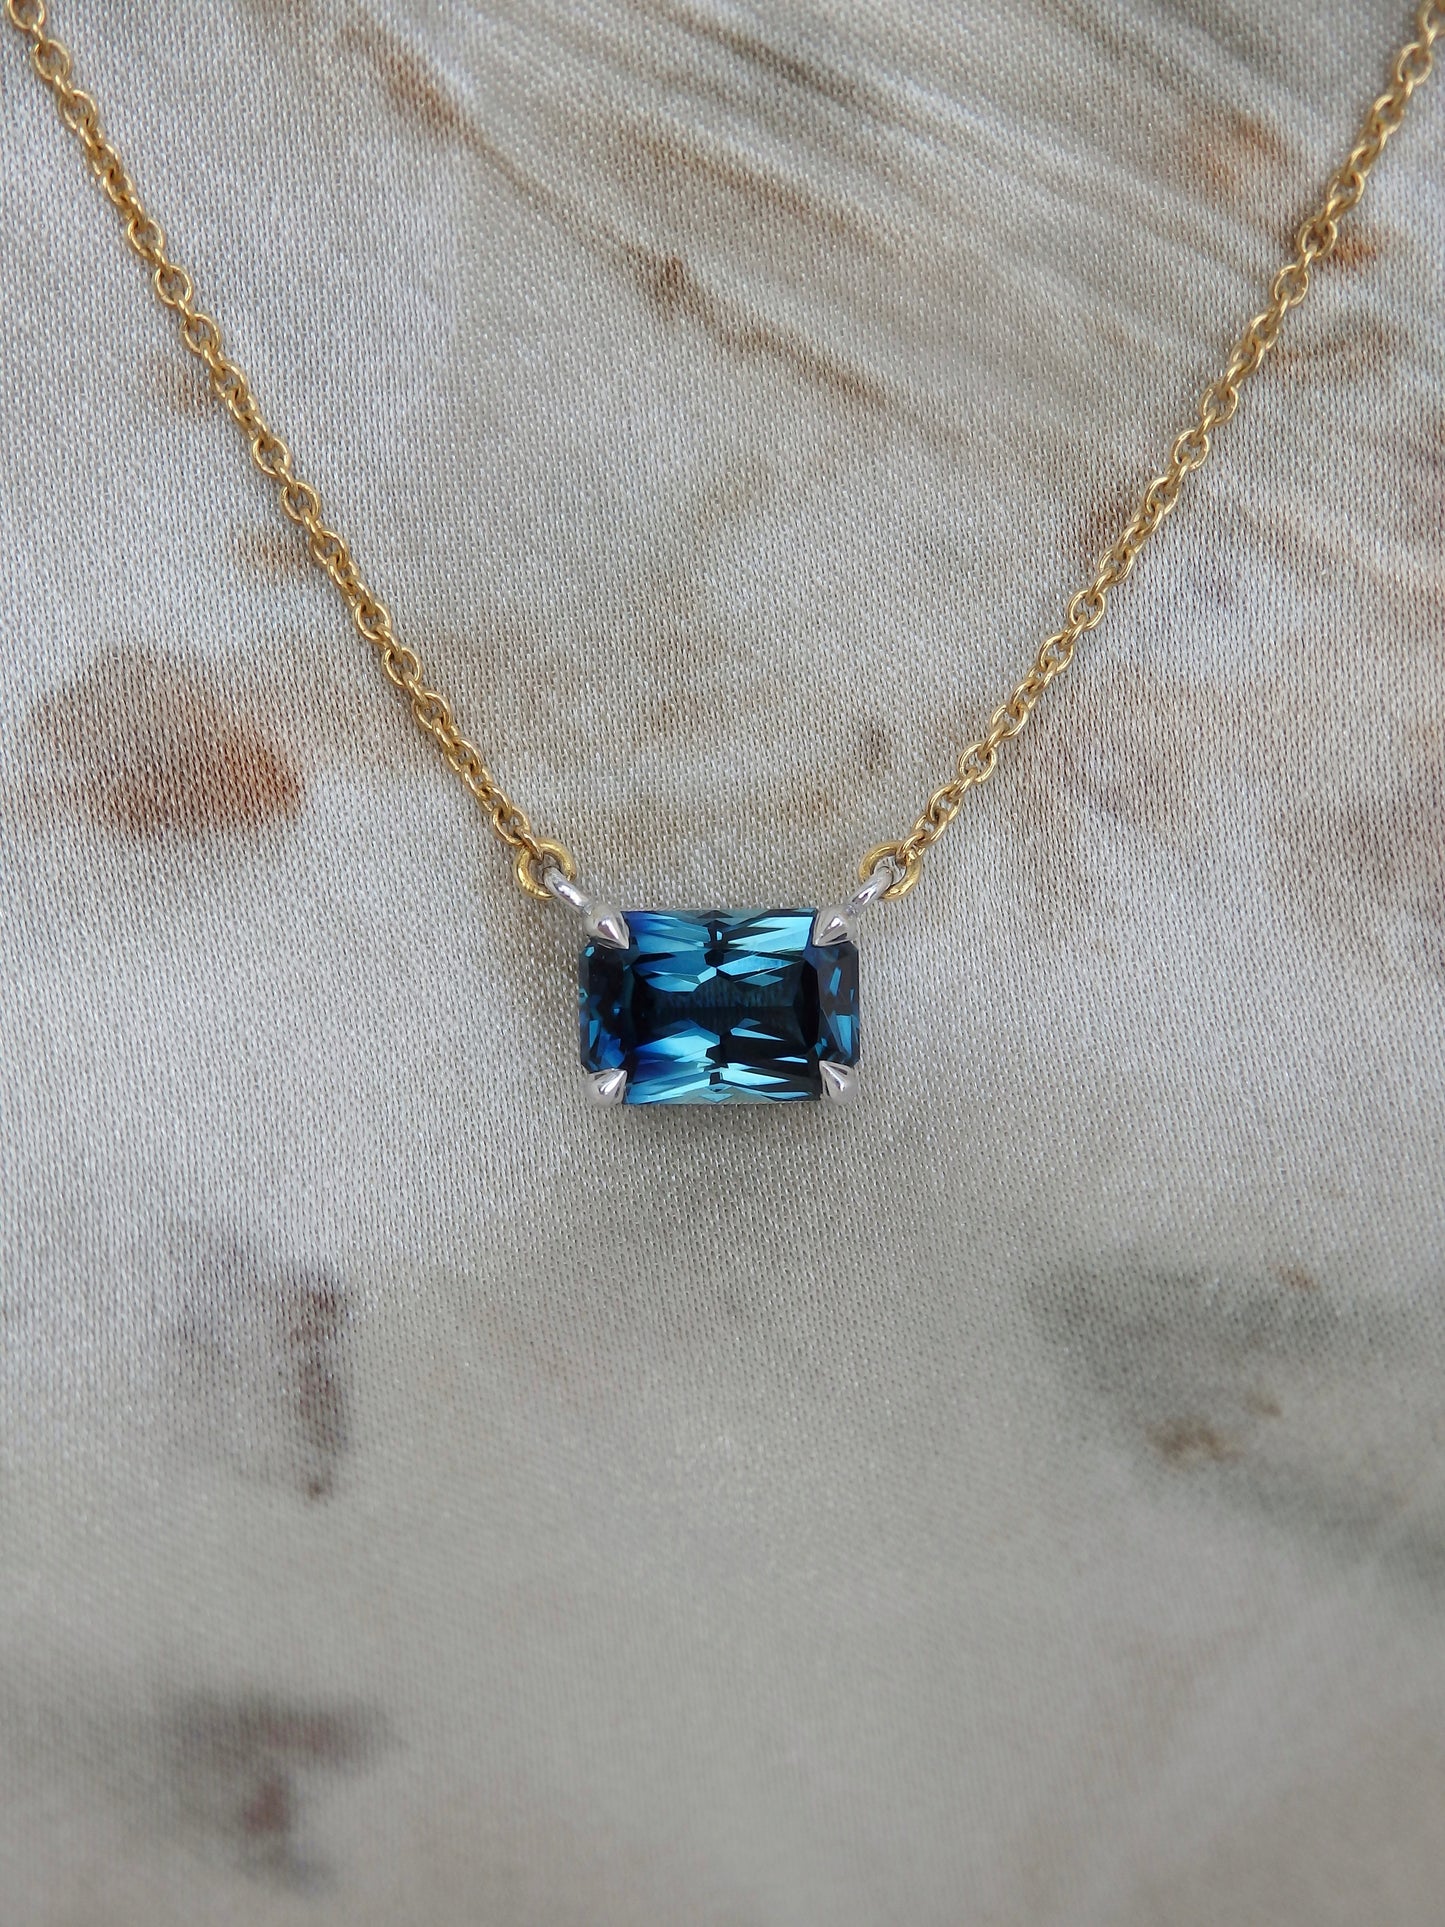 1.63ct Radiant Cut Blue Australian Sapphire, Platinum & 18ct Gold Necklace